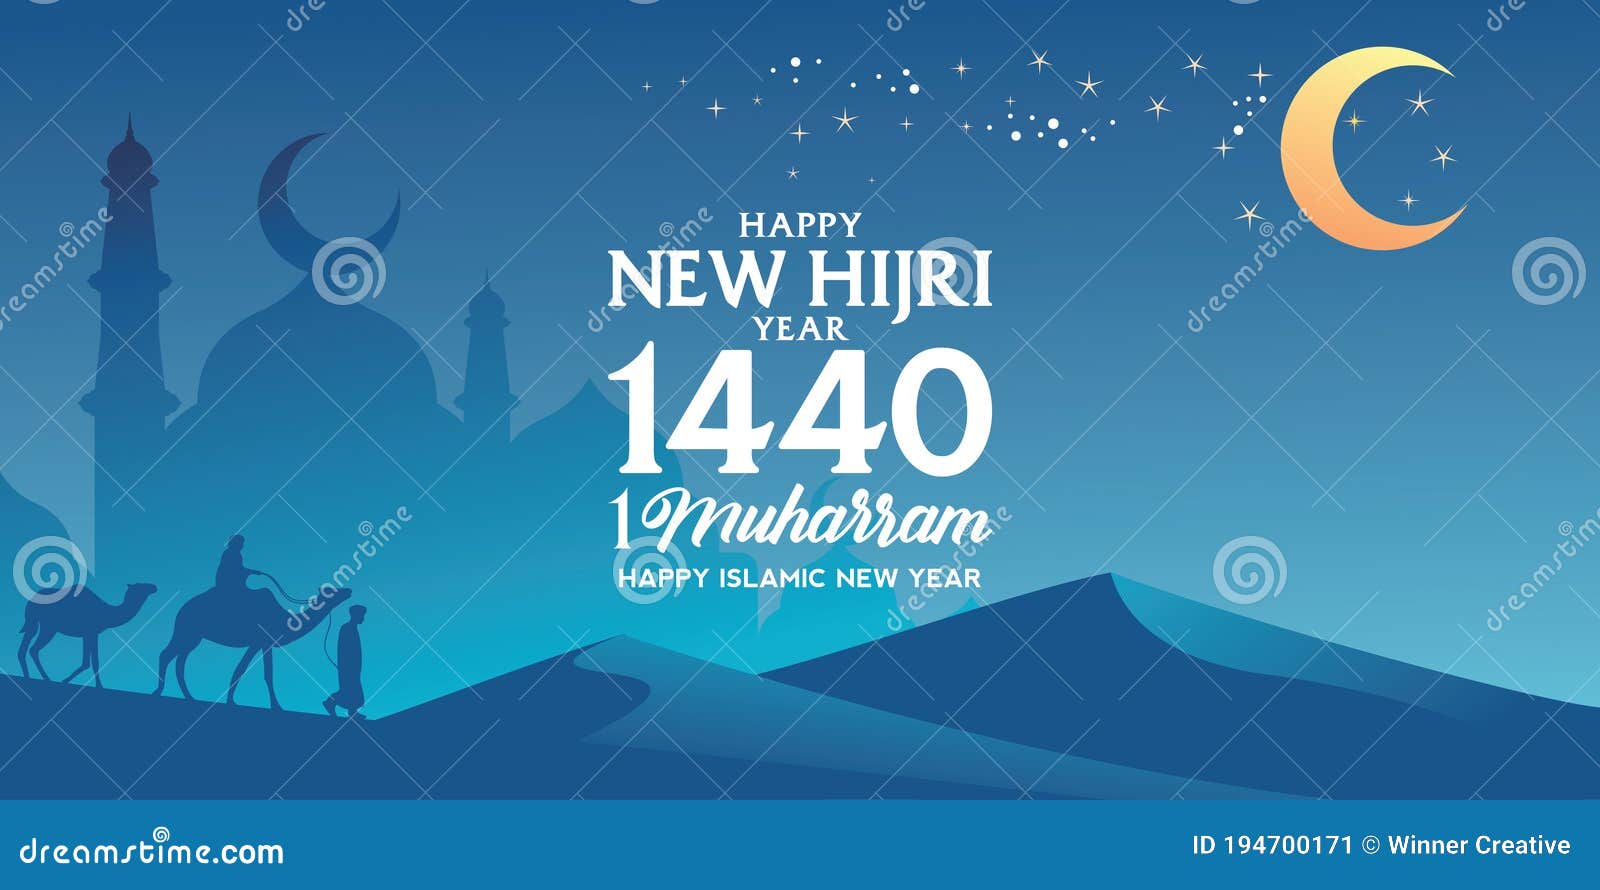 Happy New Hijri Year Vector Illustration. Happy Islamic New Year ...